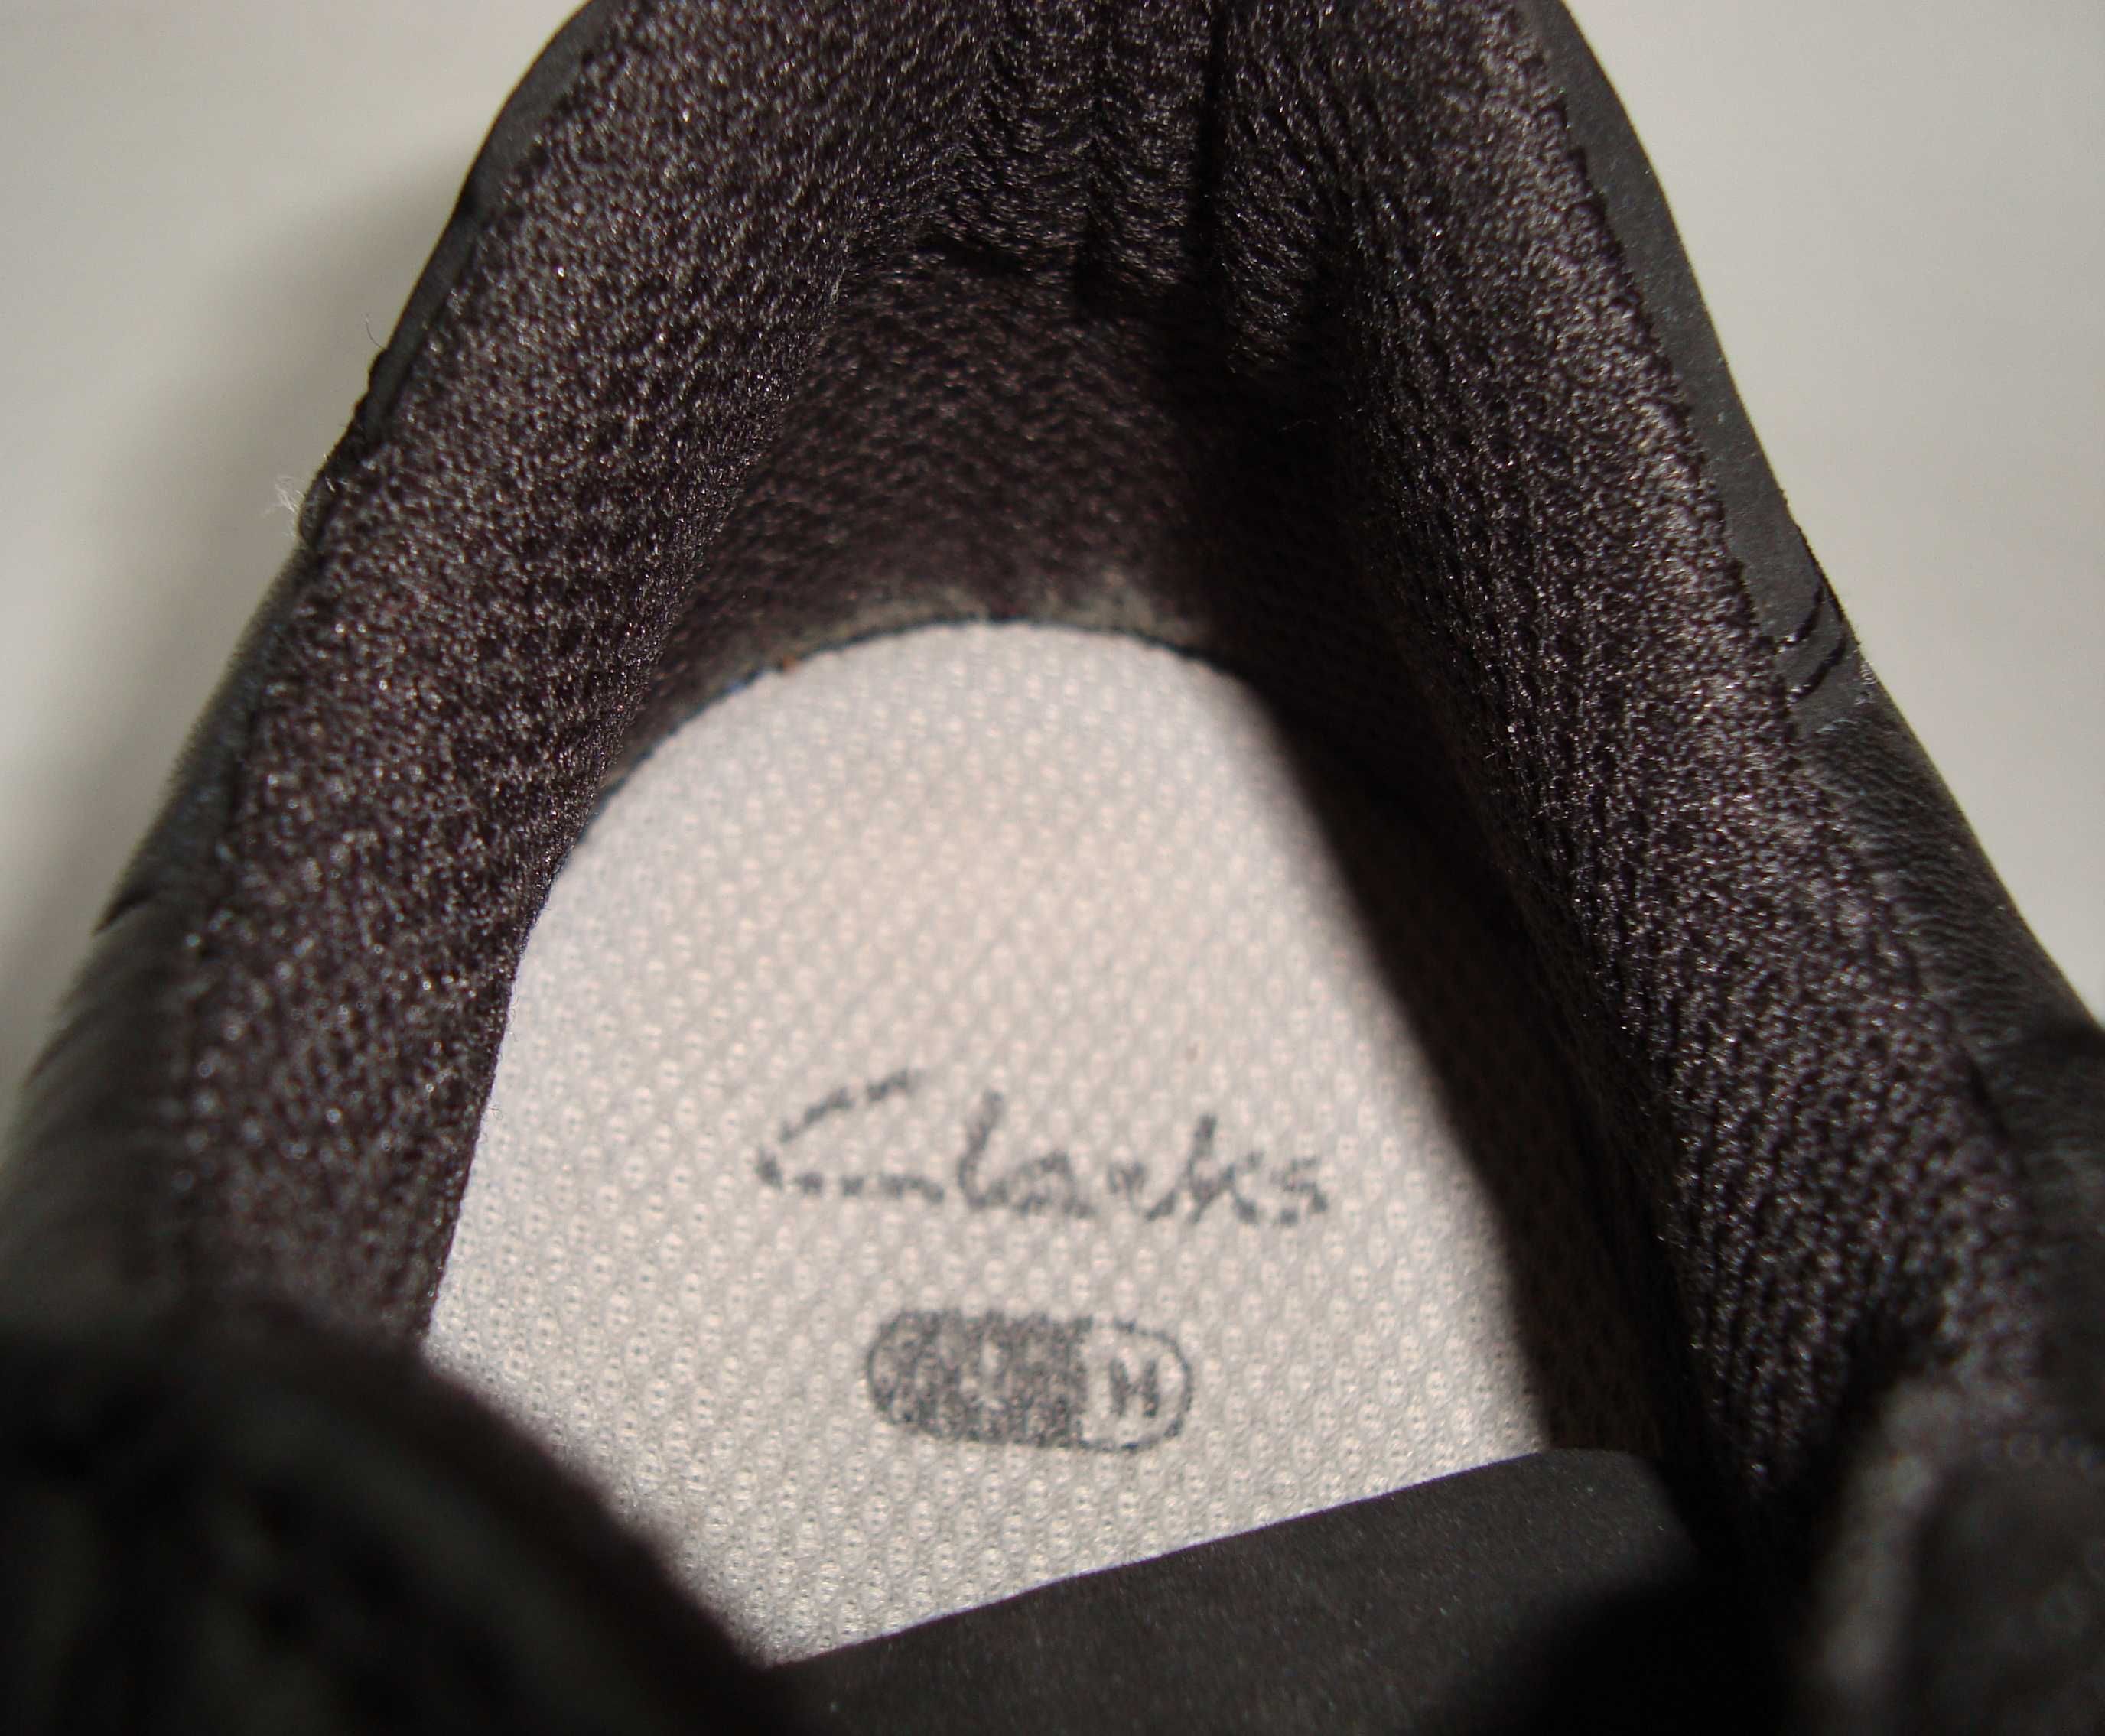 Кросовки кожаные демисезонные  Clarks, 1H, 31 размер, 20 см. по стельк